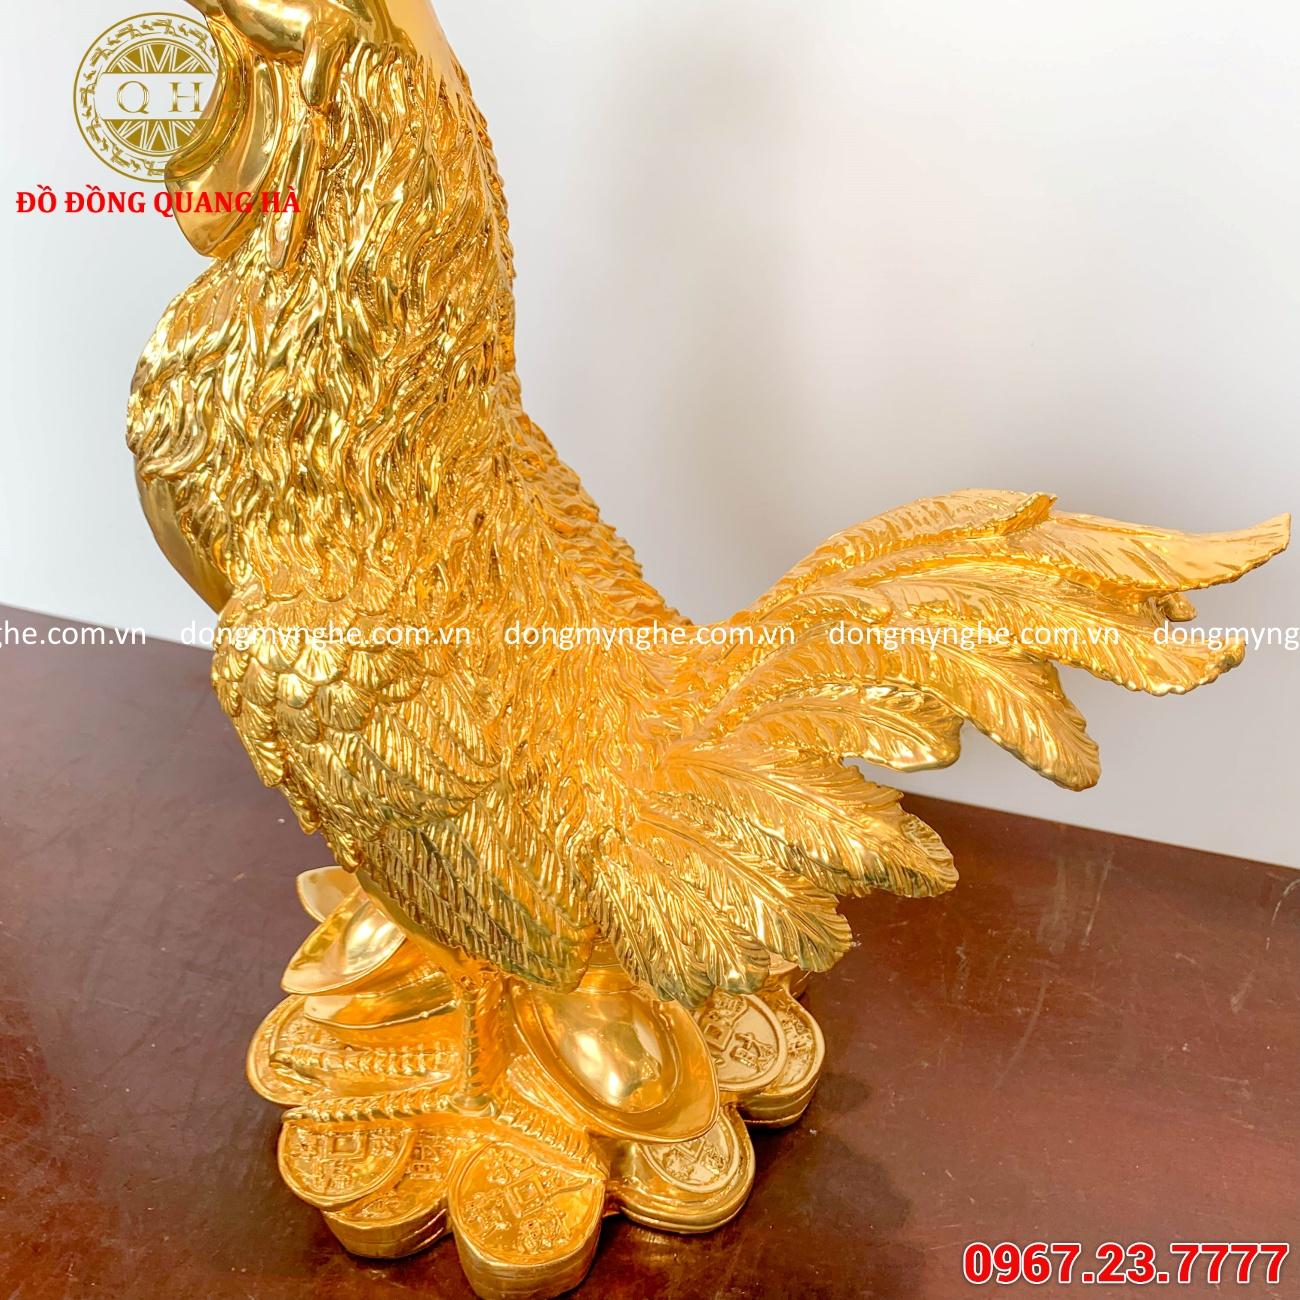 Tượng gà trống bằng đồng mạ vàng 24k cỡ lớn